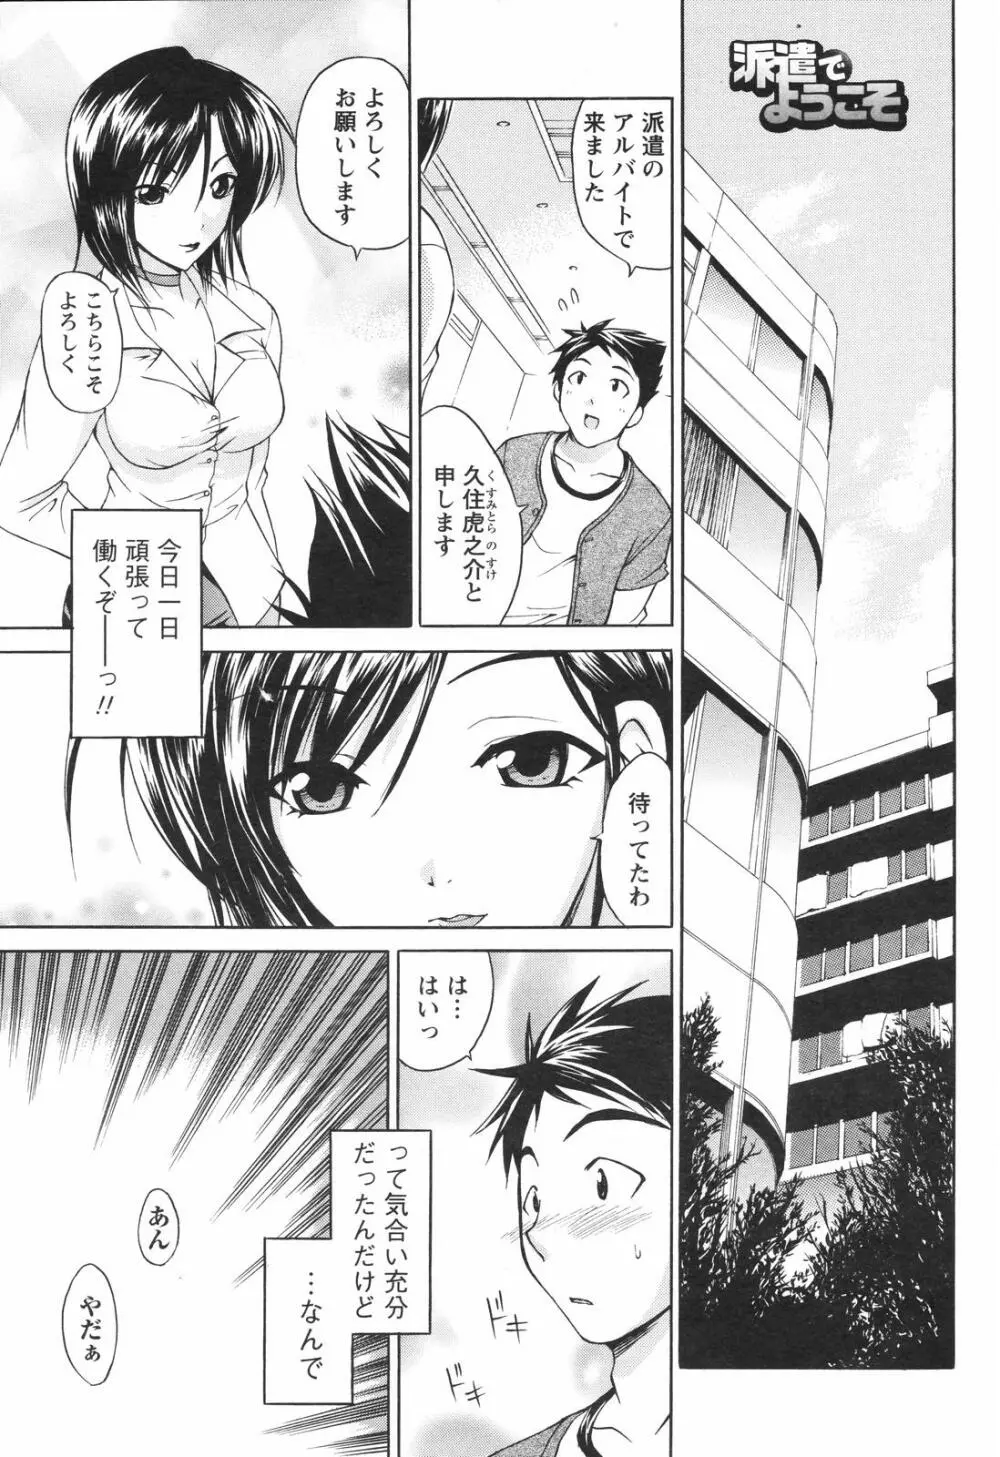 メンズヤングスペシャルIKAZUCHI雷 Vol.4 2007年12月号増刊 181ページ